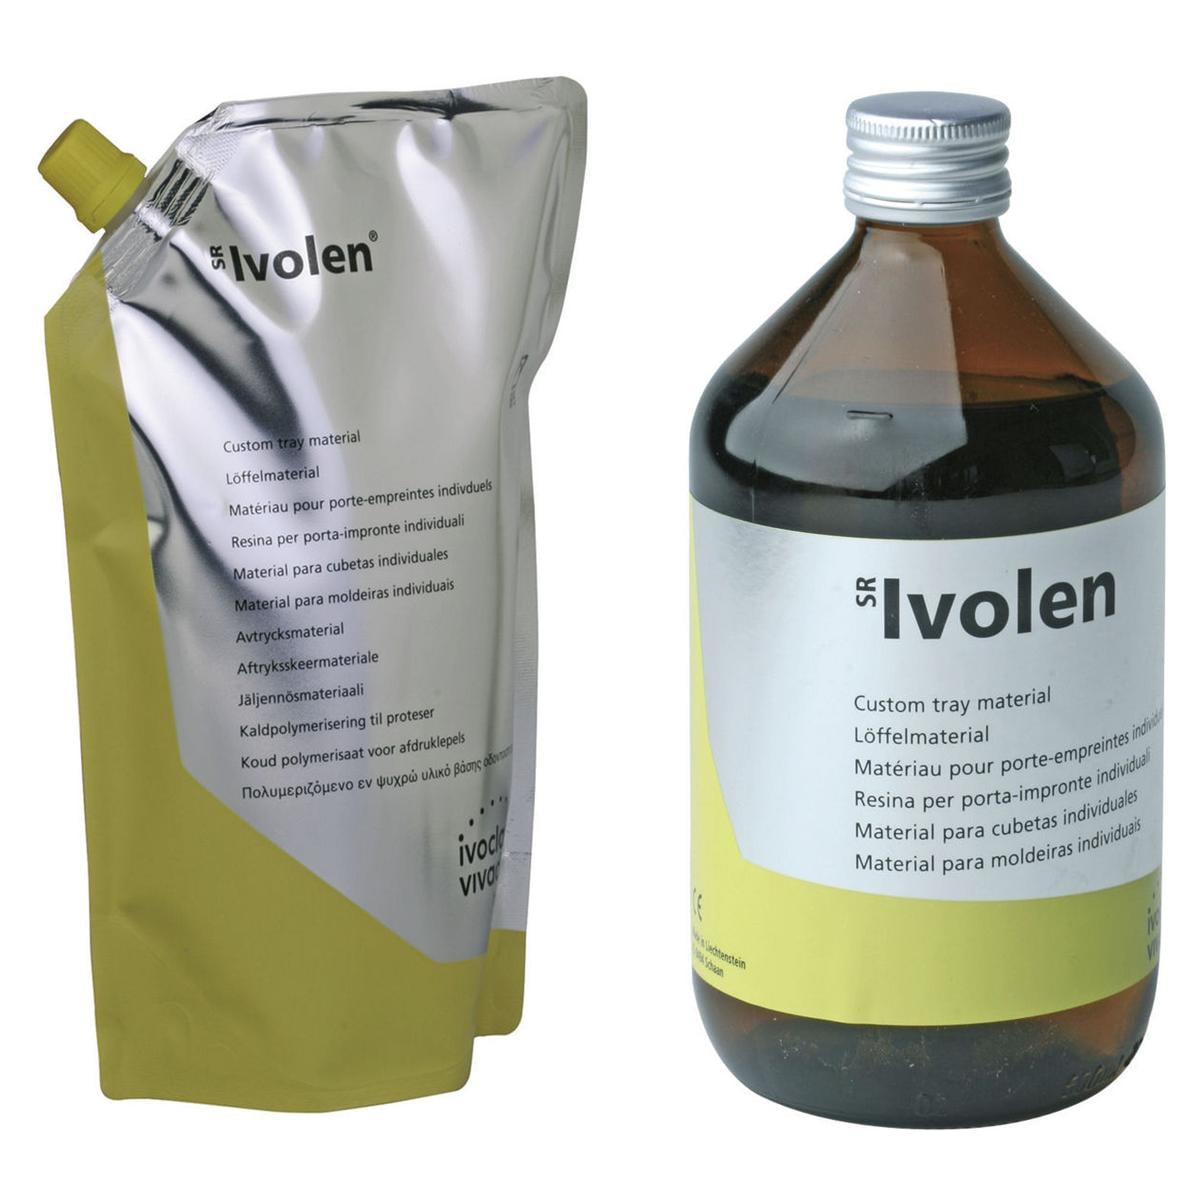 SR IVOLEN KIT - Kit contenente: 2 buste di polvere da 500 g cad., liquido da 500 ml ed accessori.